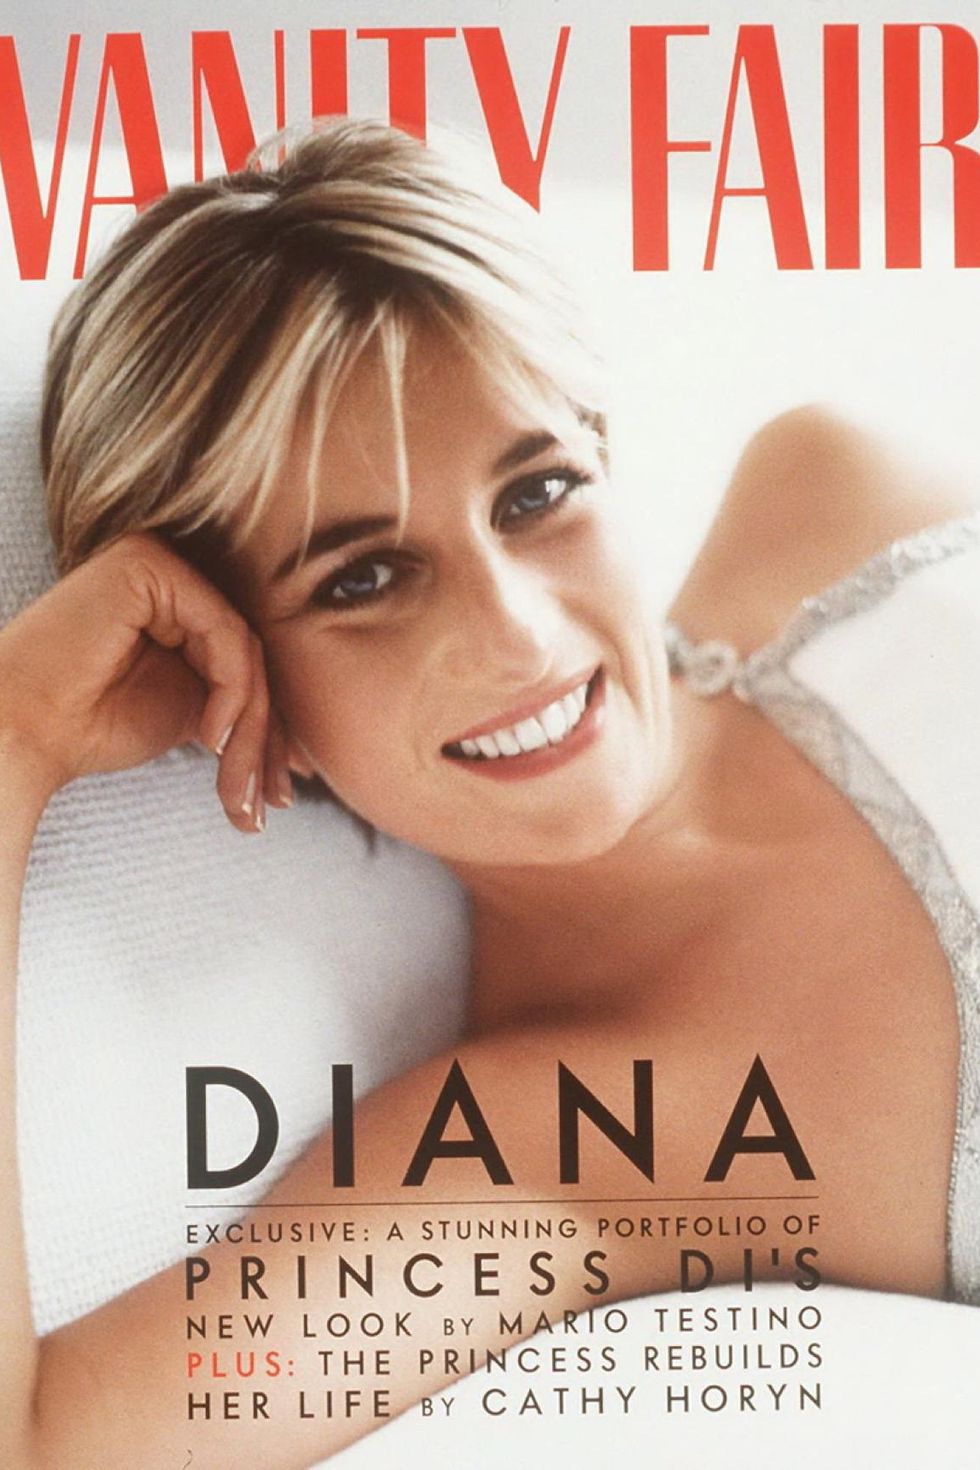 princess diana - june 1997 vanity fair cover